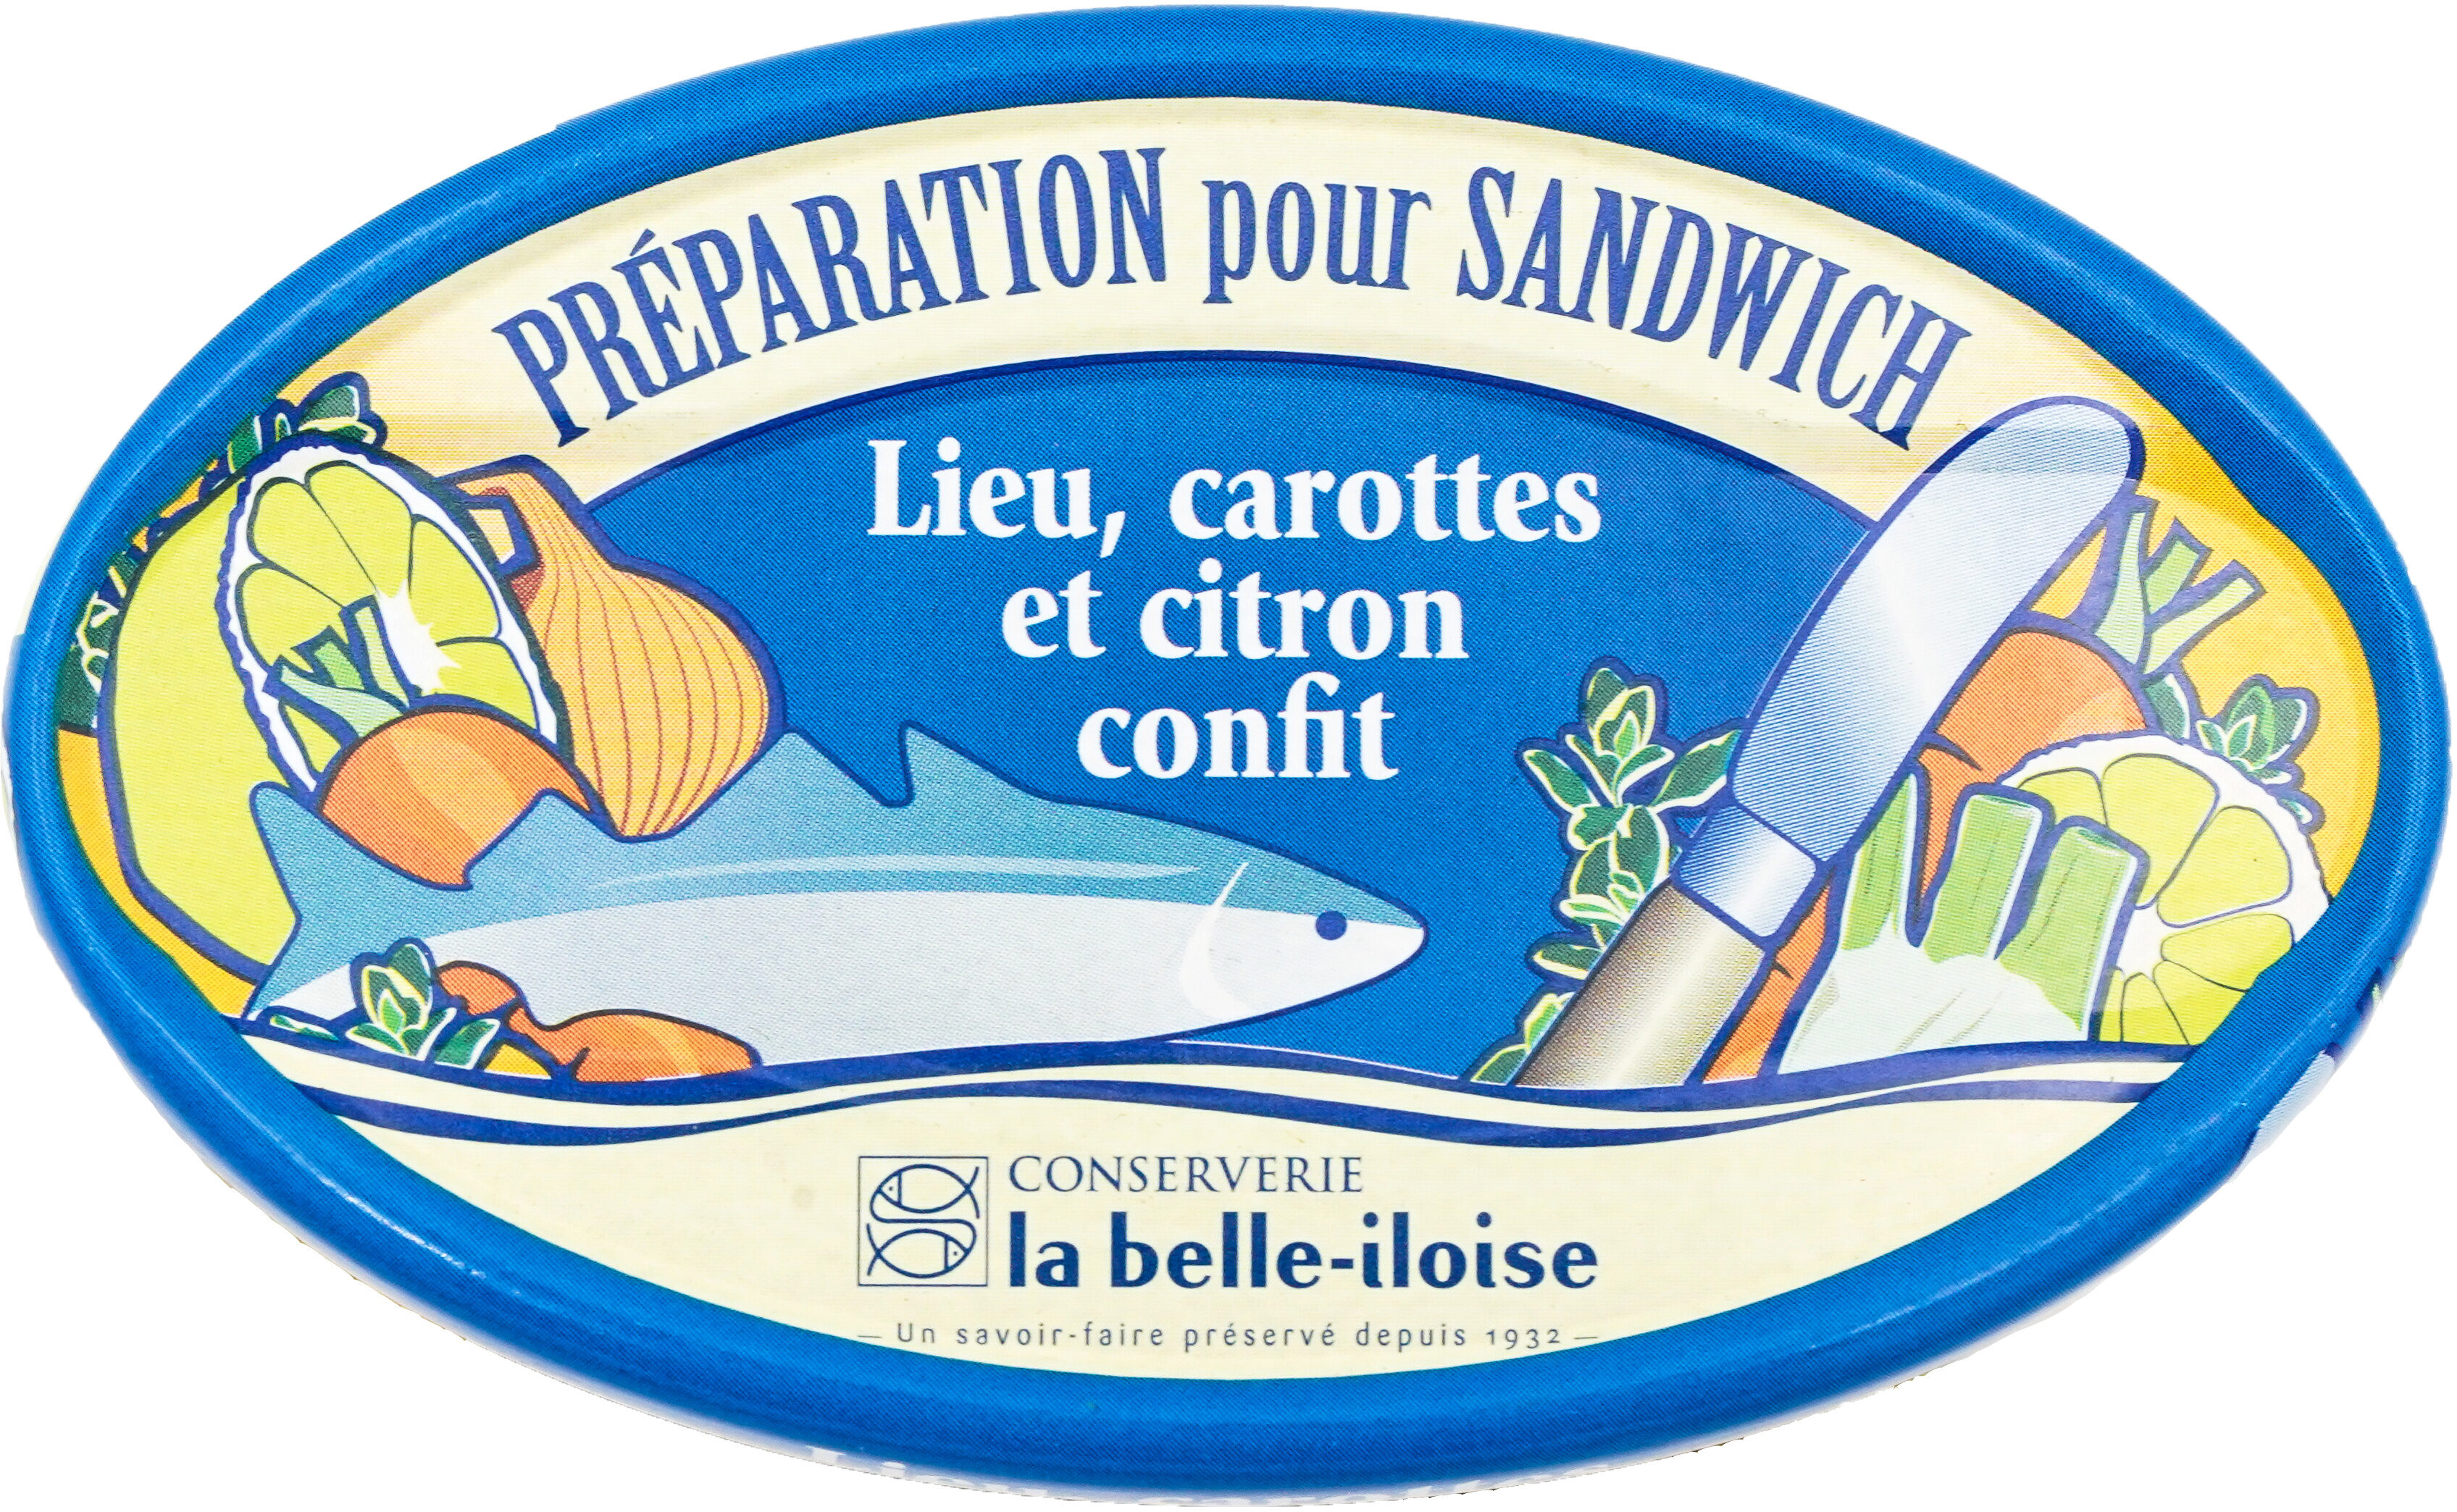 Préparation pour sandwich lieu, carottes et citron confit - Product - fr